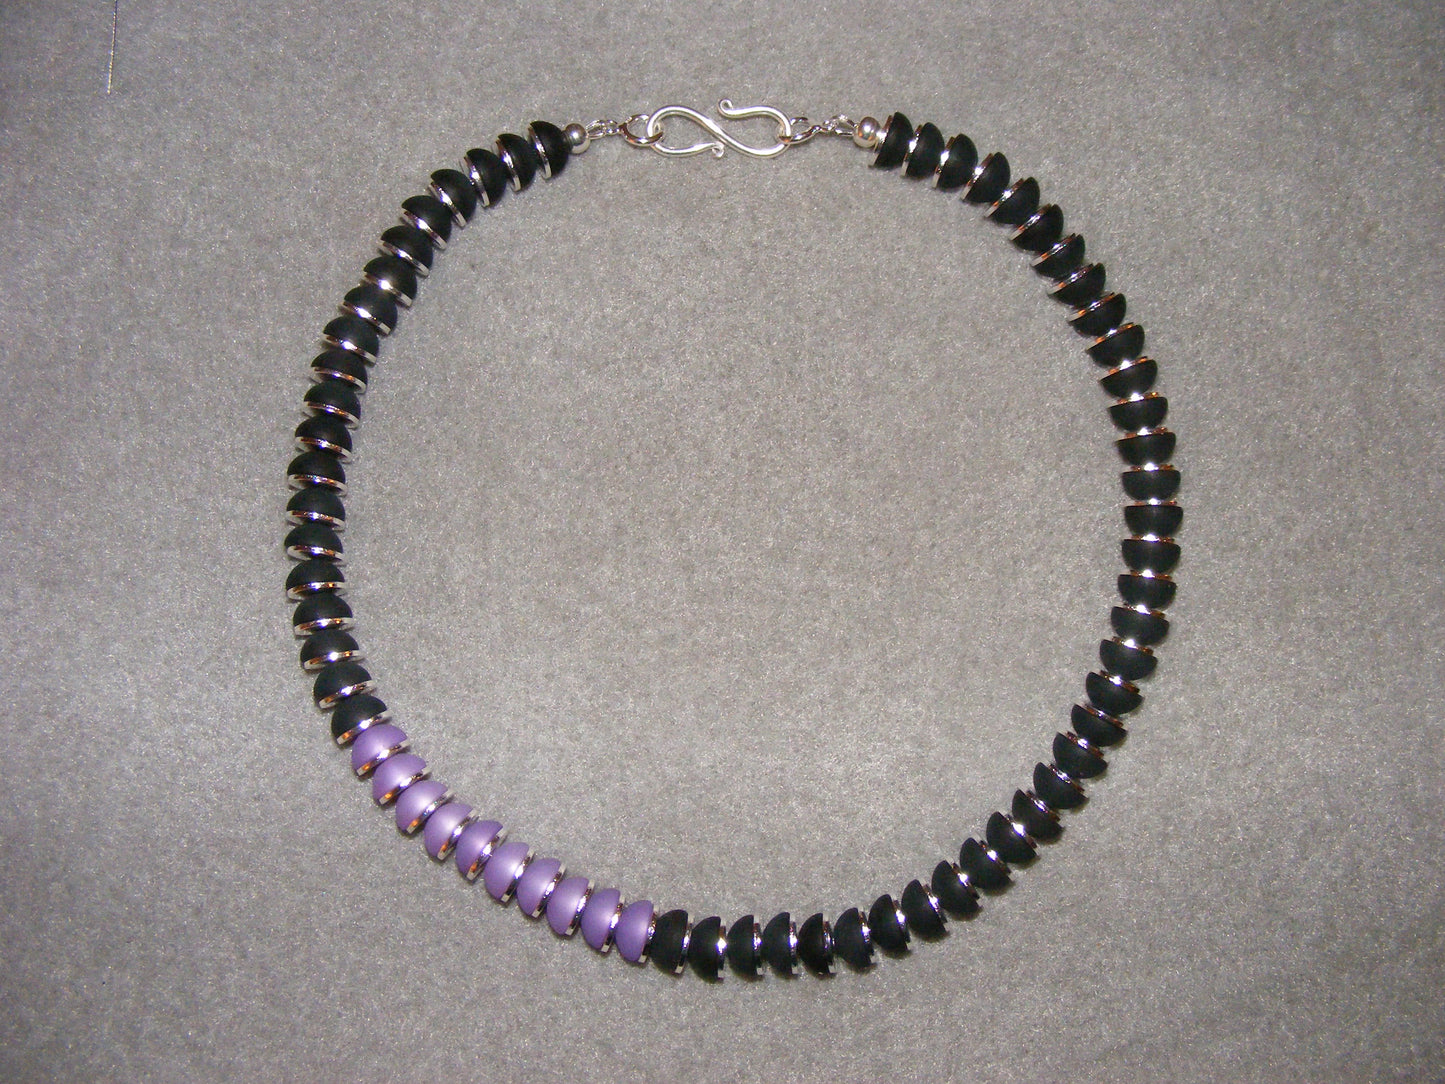 Halskette, 10 mm Polaris-Halbkugeln mit versilberten Scheiben